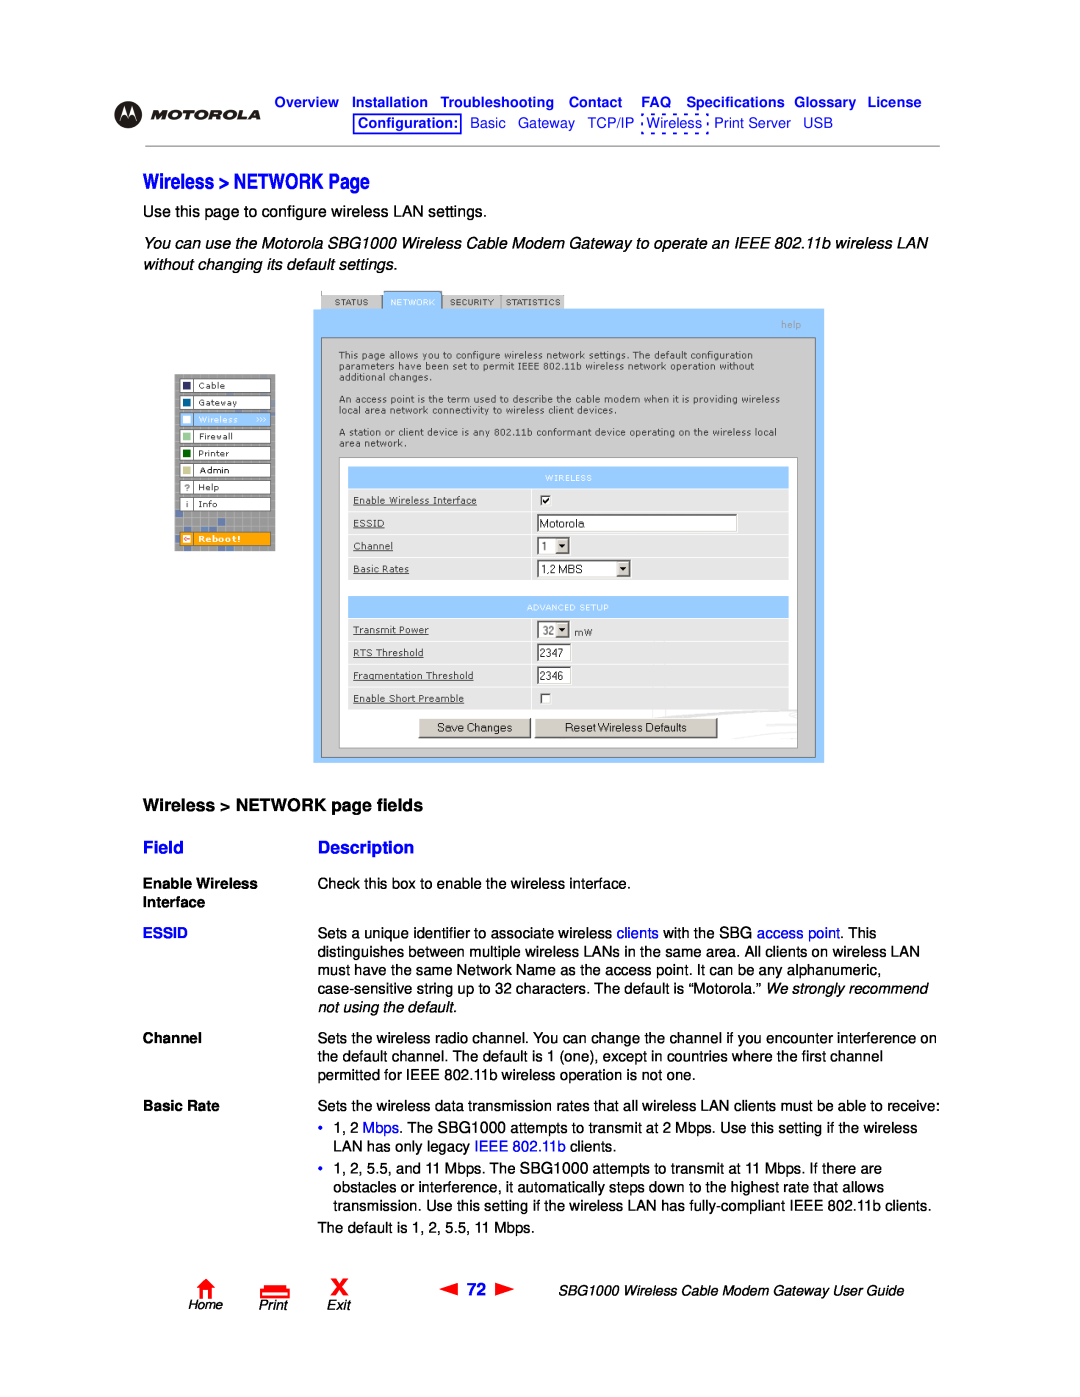 Motorola SBG1000 Wireless NETWORK Page, Wireless NETWORK page fields, Field, Description, Essid, not using the default 